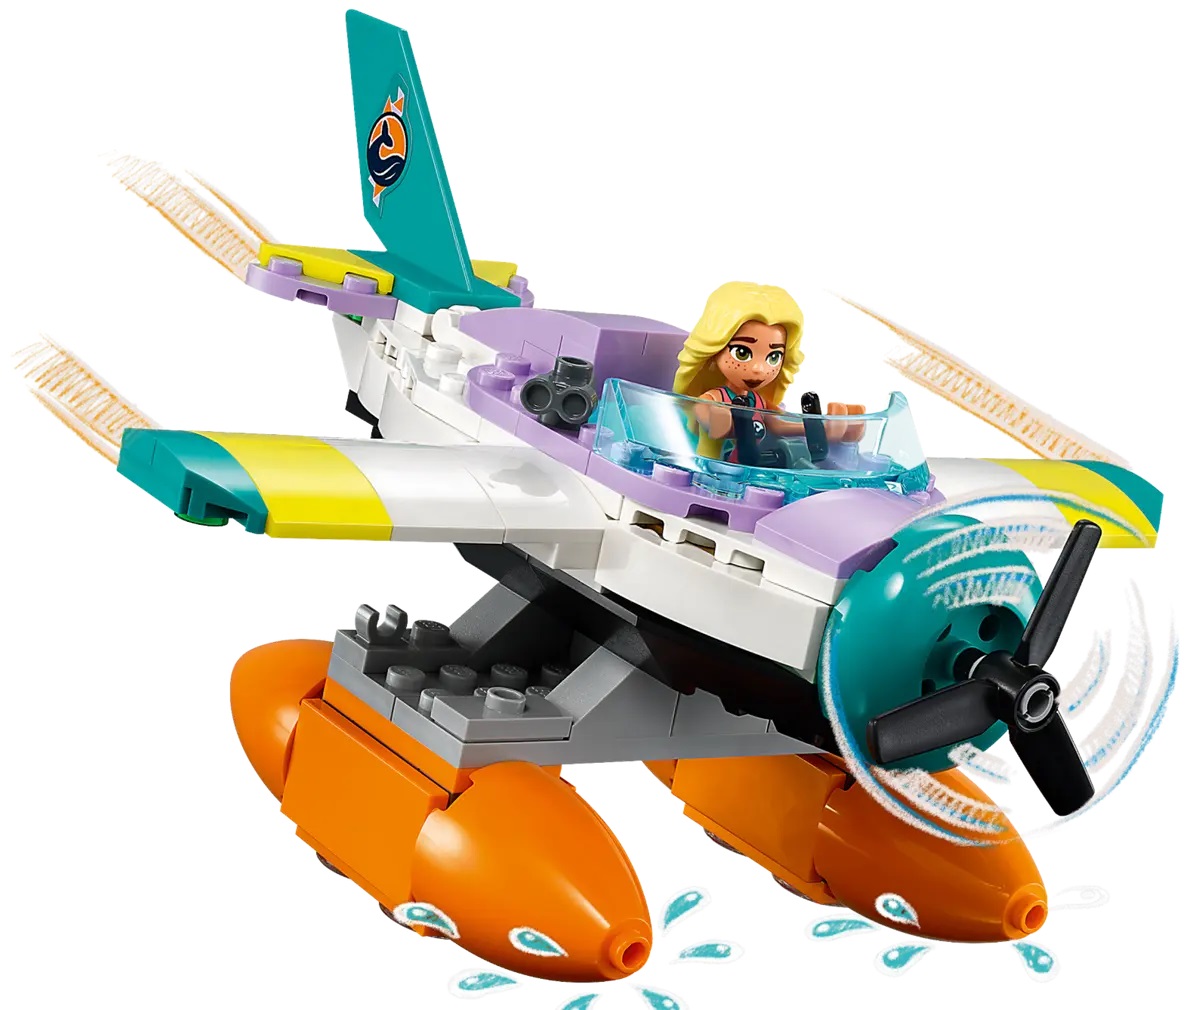 Lego Friends. Avion de salvare pe mare